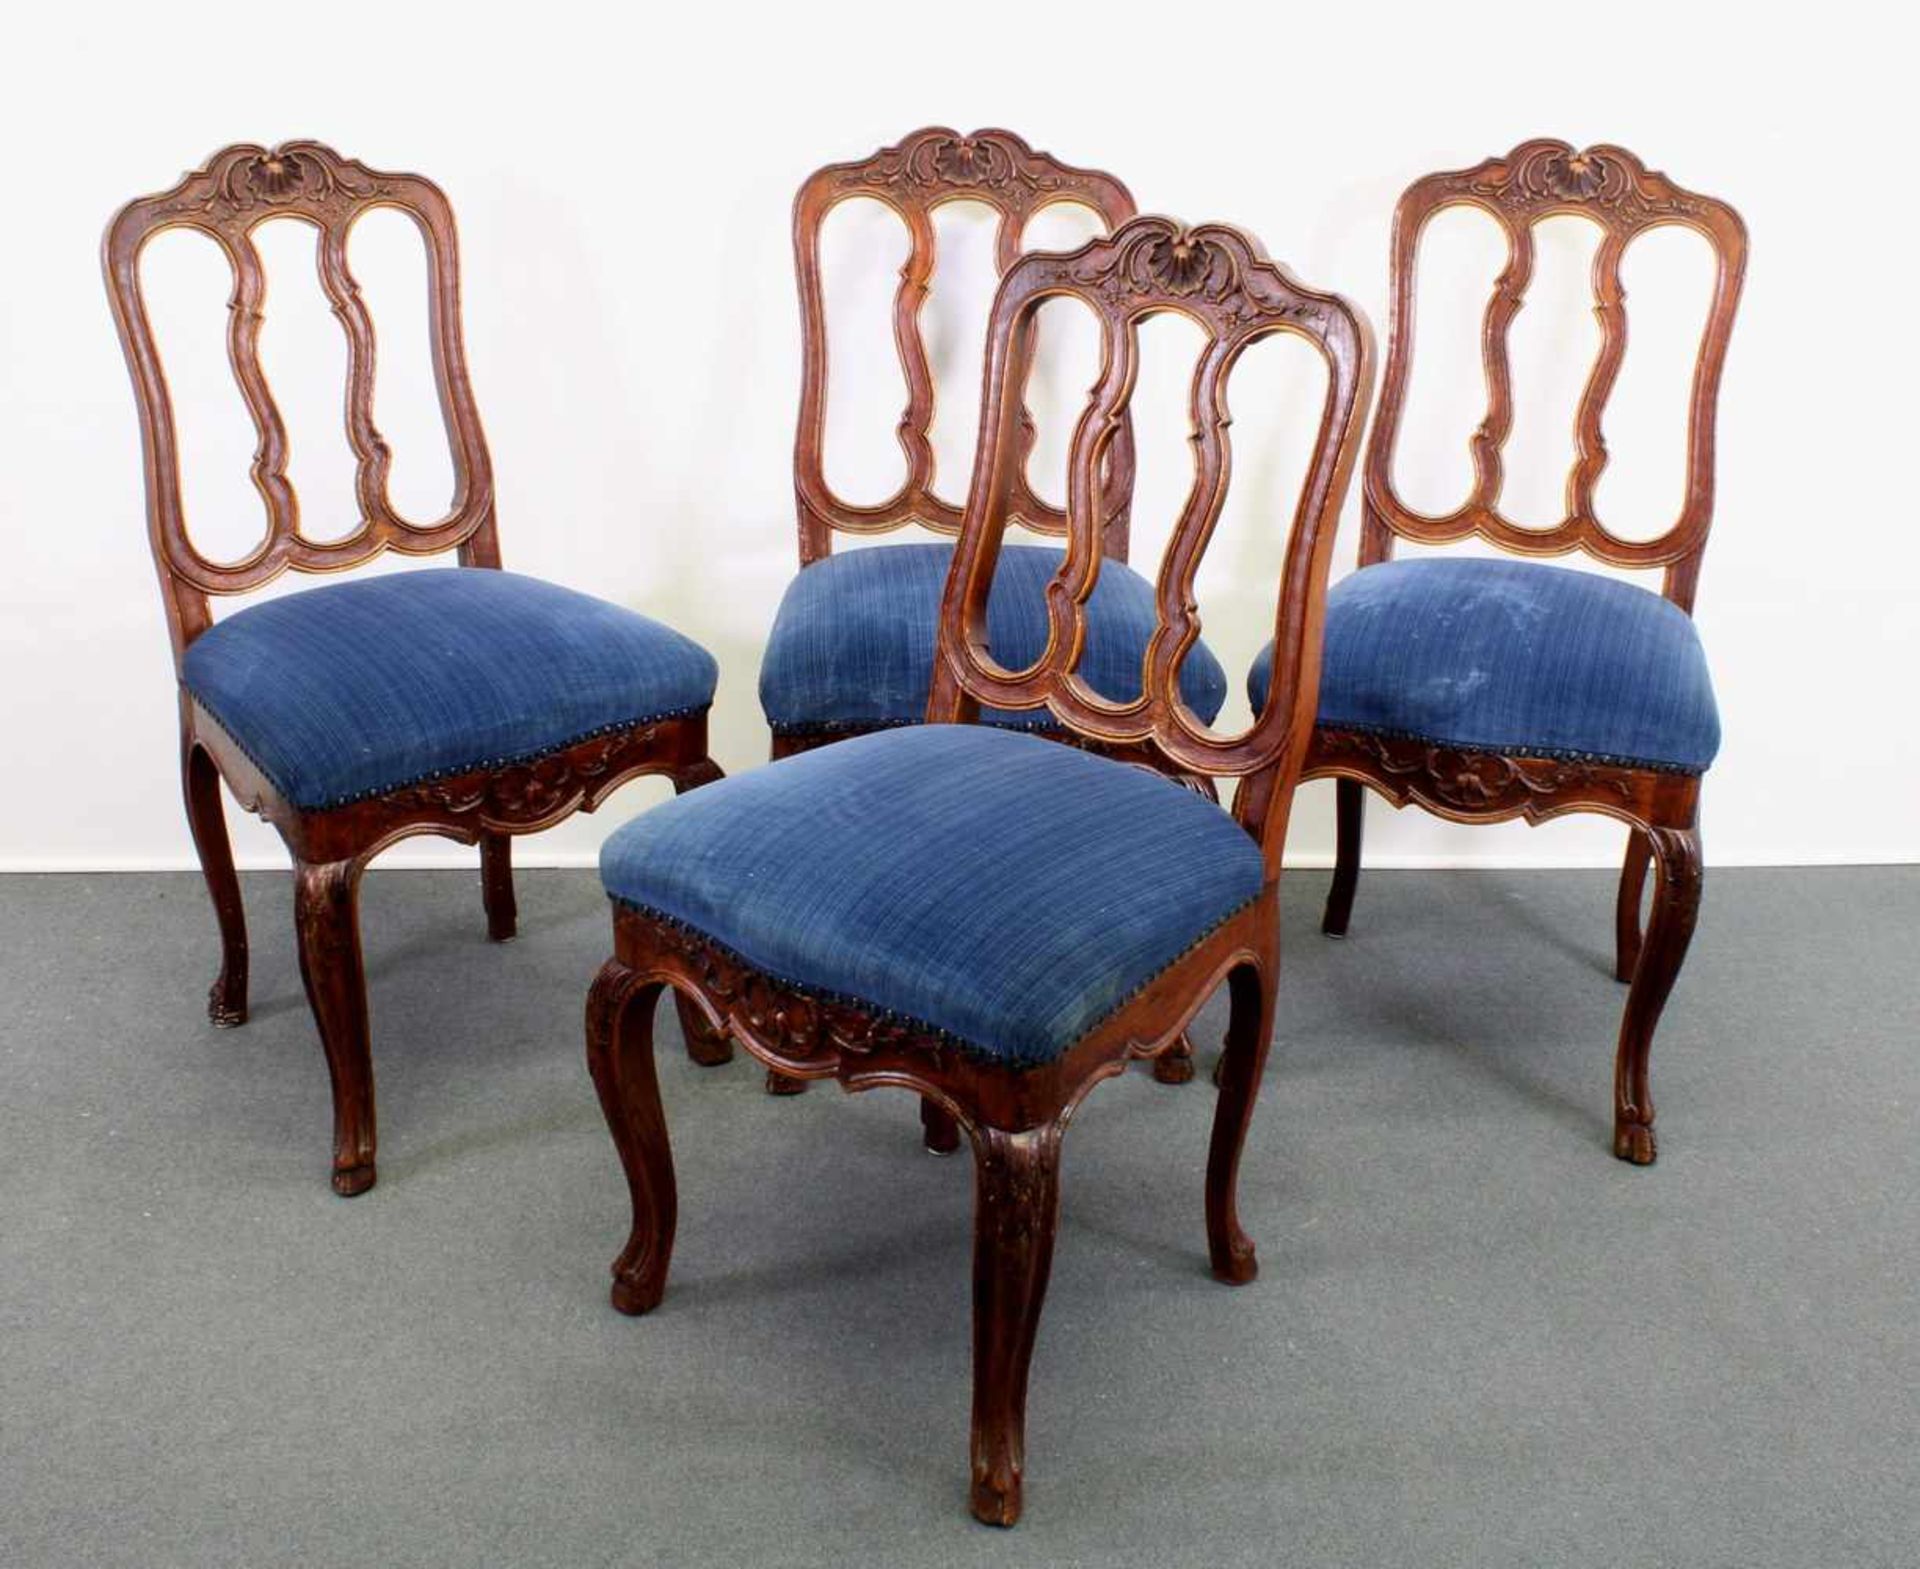 4 Stühle, Eifel, Mitte 18. Jh., Eiche, Flachschnitzerei, erneuertes Sitzpolster